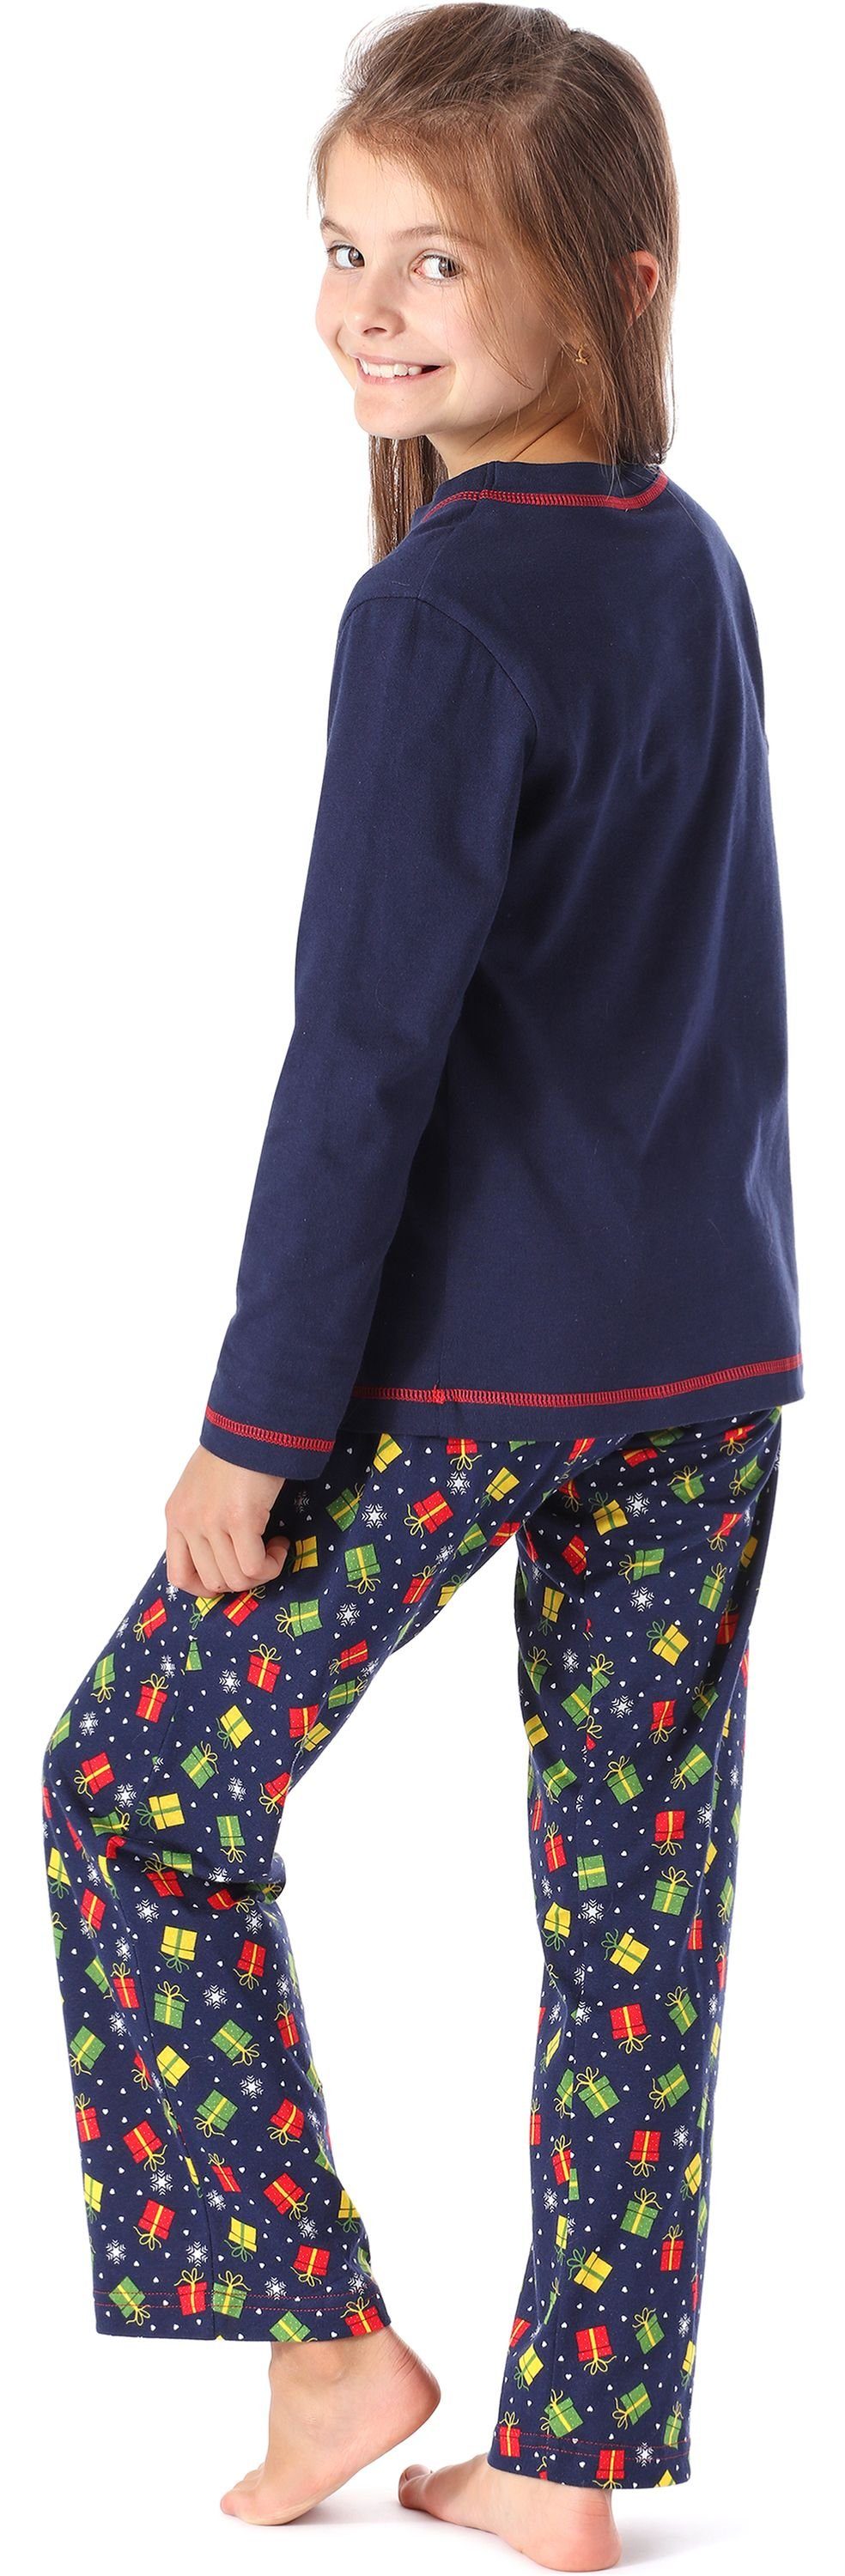 Schlafanzug MS10-215 Mädchen Style Merry Marineblau/Geschenke Schlafanzug